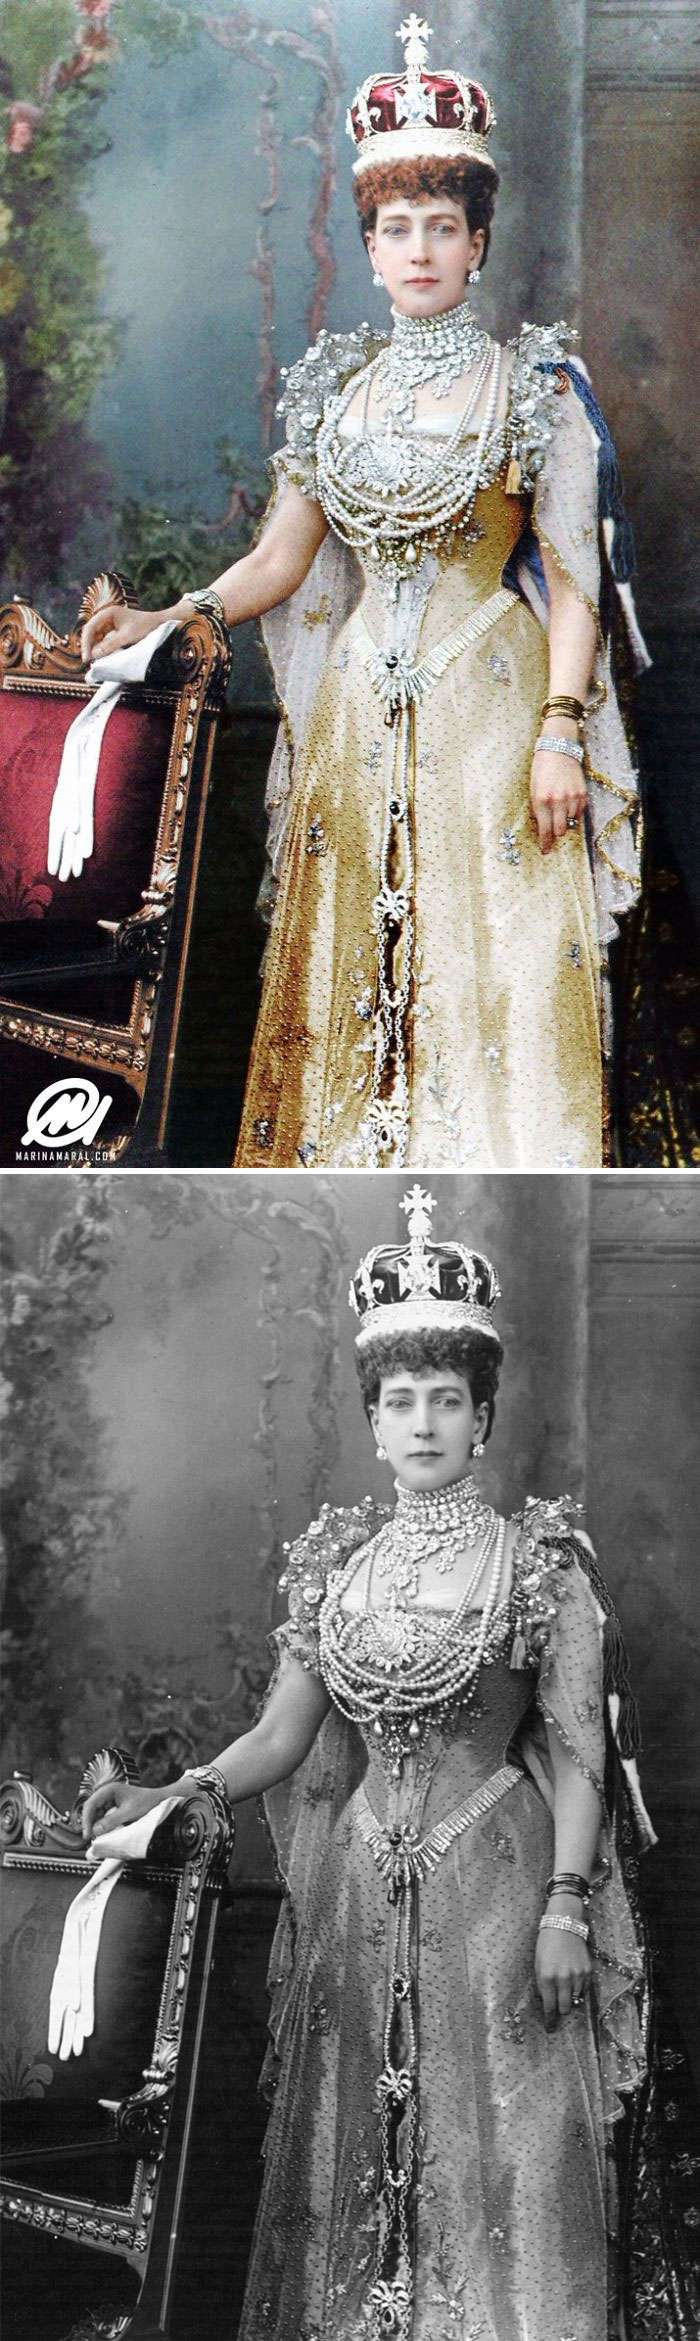 Queen Elizabeth Great Grandmother